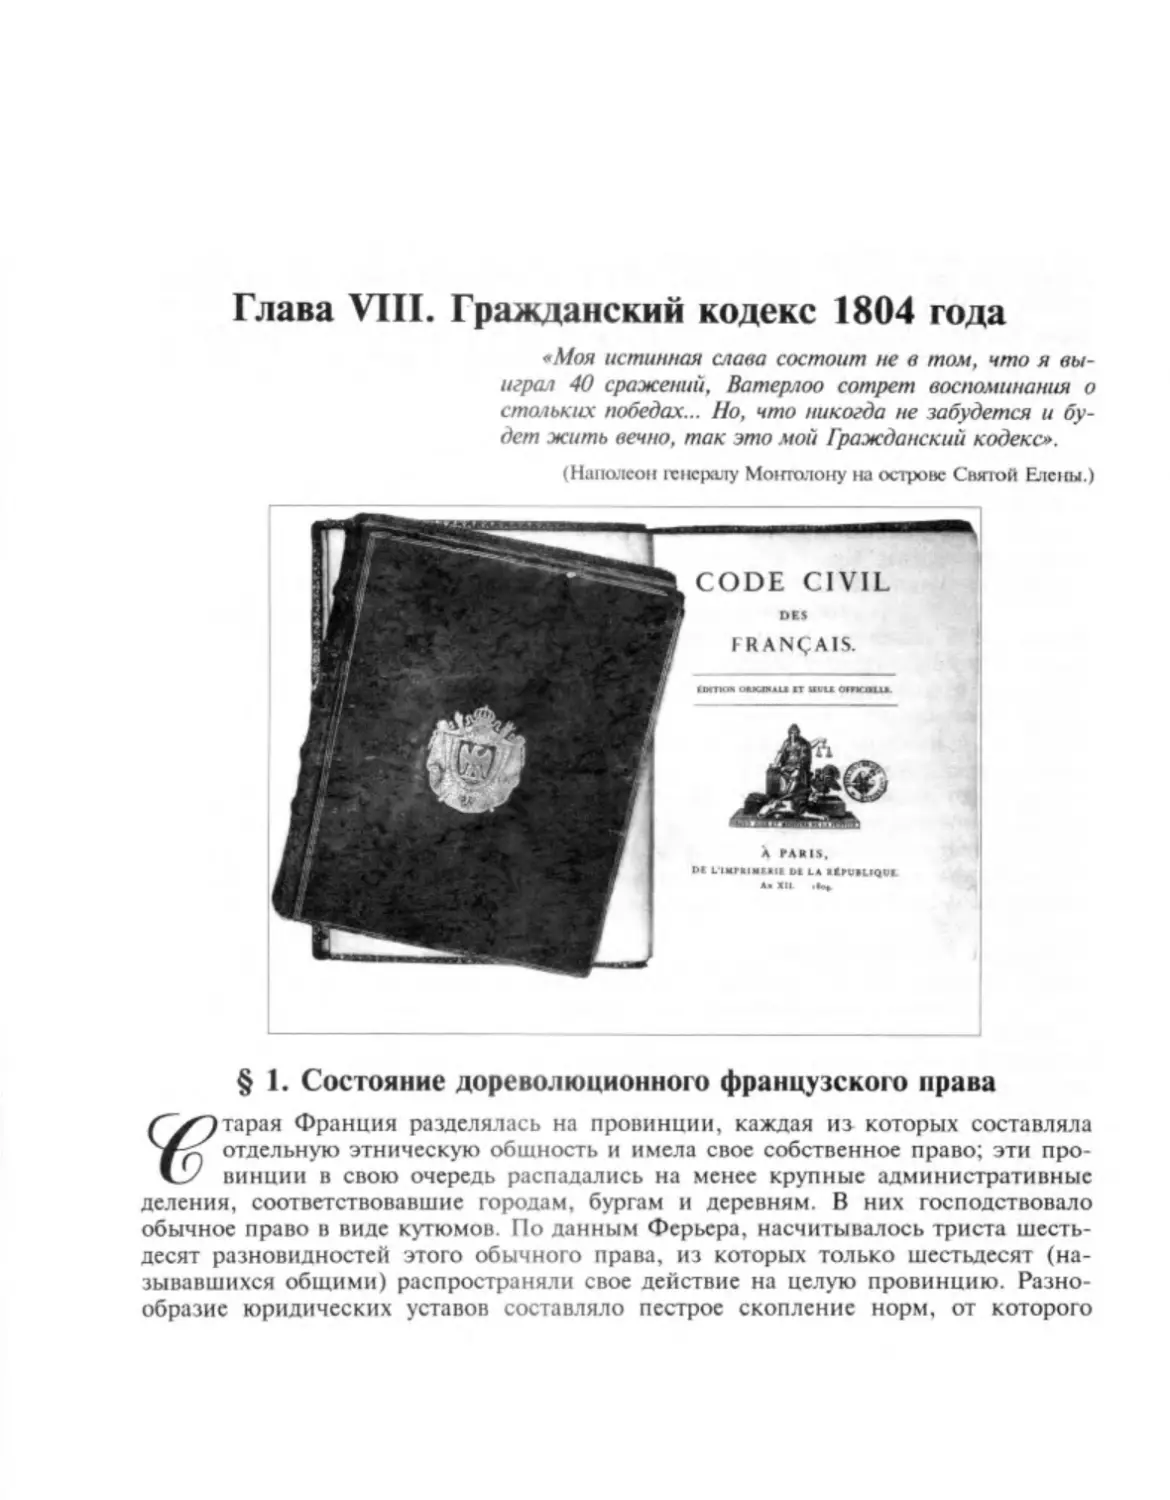 ГЛАВА VIII. ГРАЖДАНСКИЙ КОДЕКС 1804 ГОДА